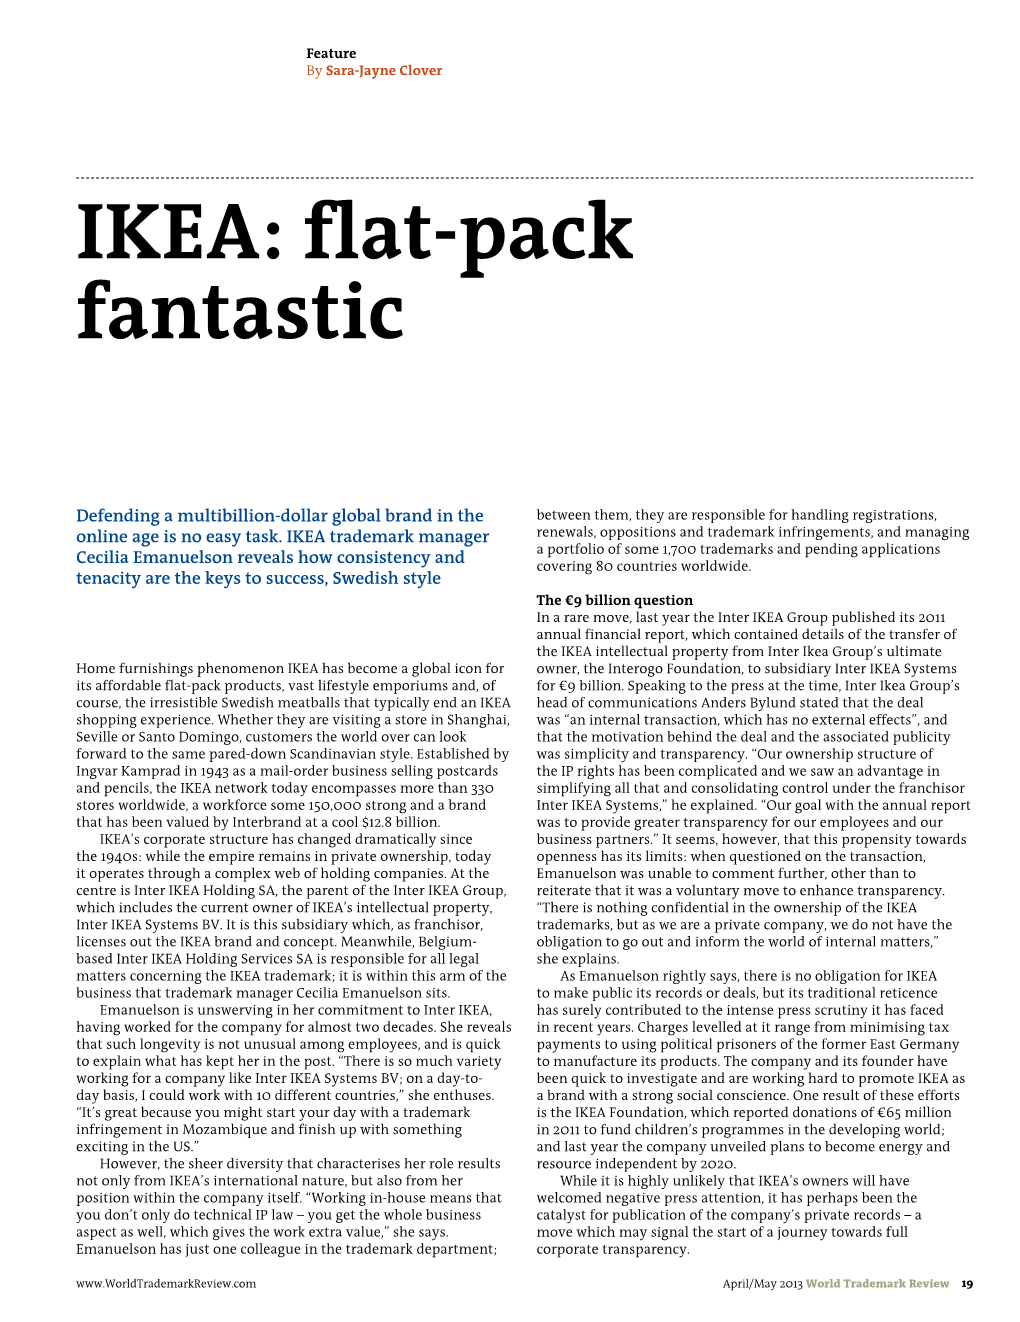 IKEA: Flat-Pack Fantastic